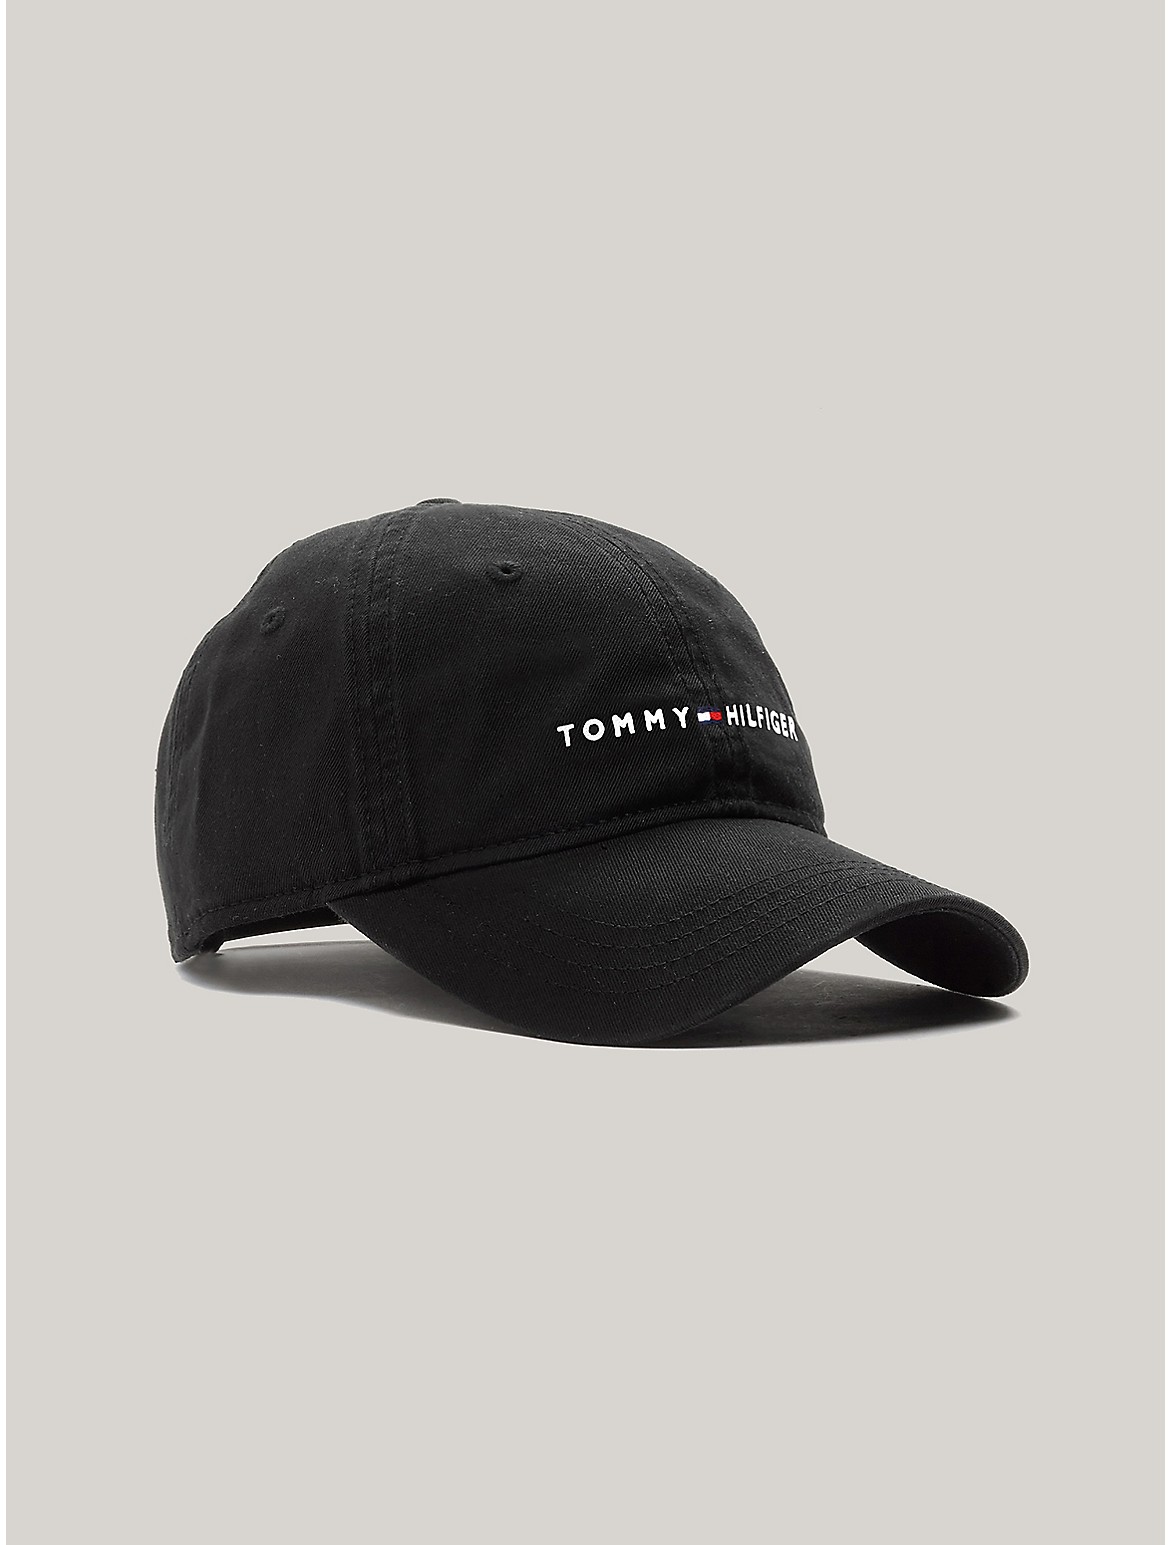 Tommy Hilfiger Men's Embroidered Tommy Logo Baseball Cap - Black